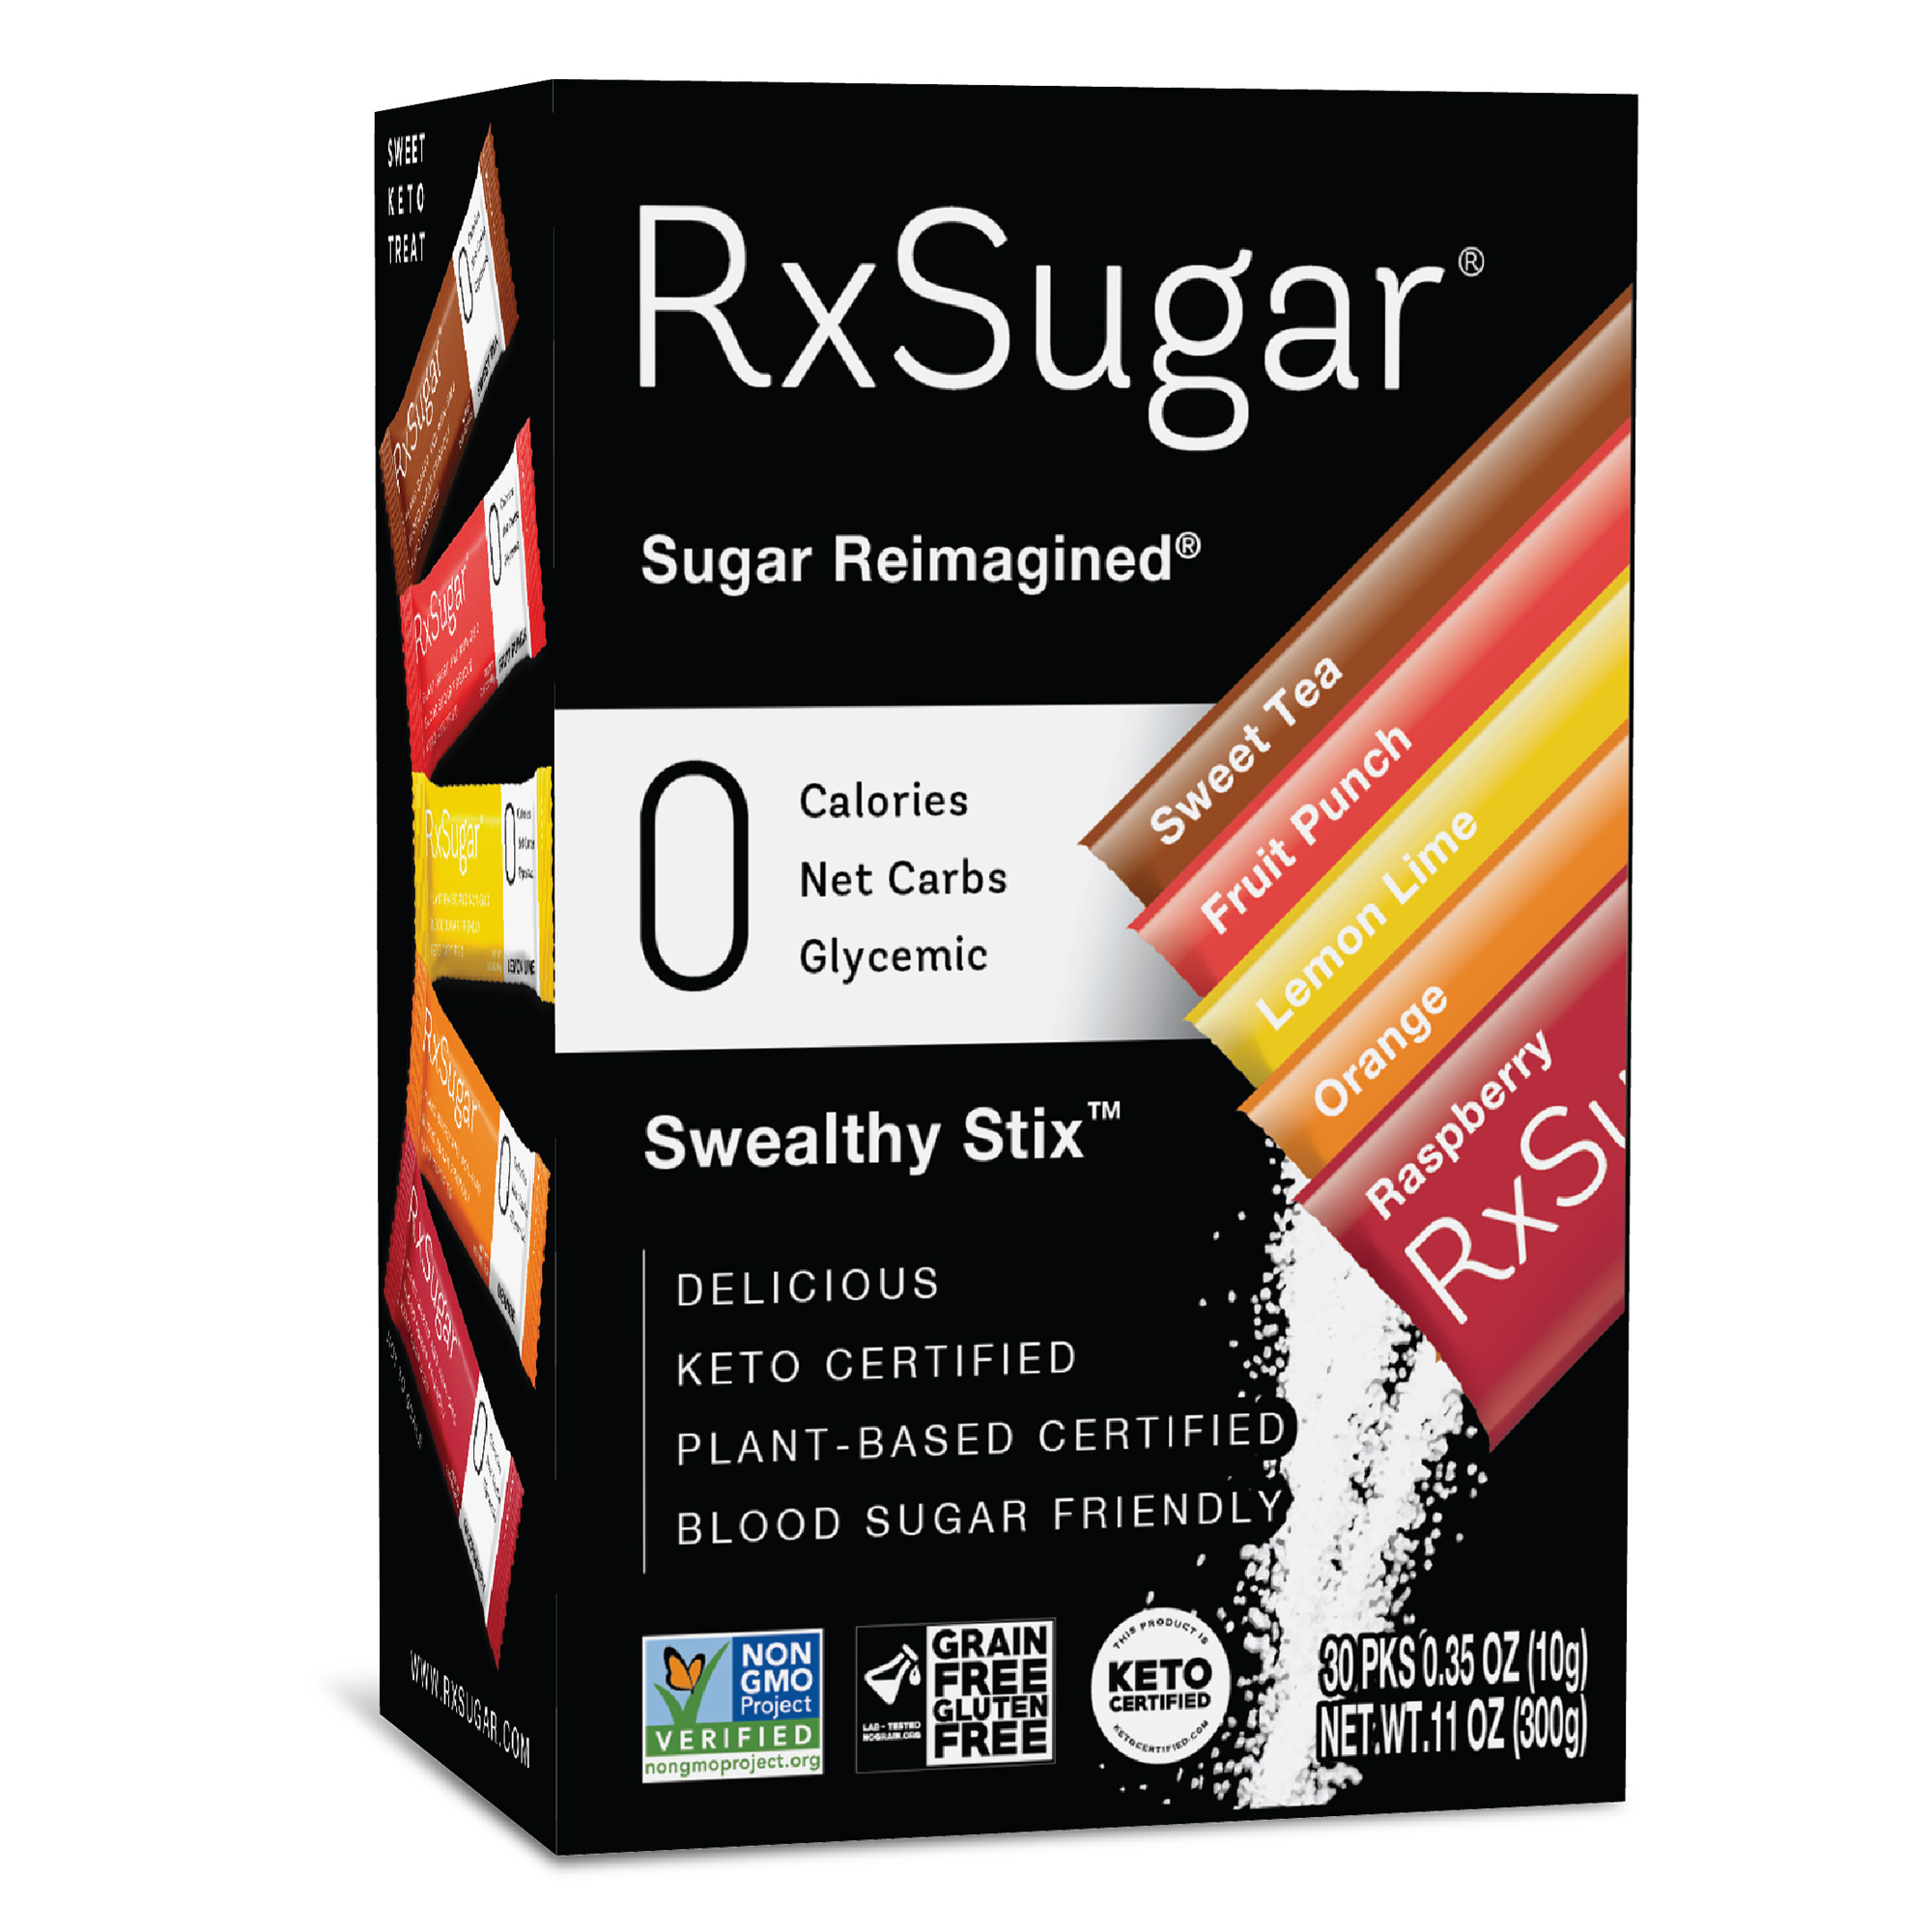 RxSugar Allulose Swealthy Stix Carton 6 units per case 11.0 oz